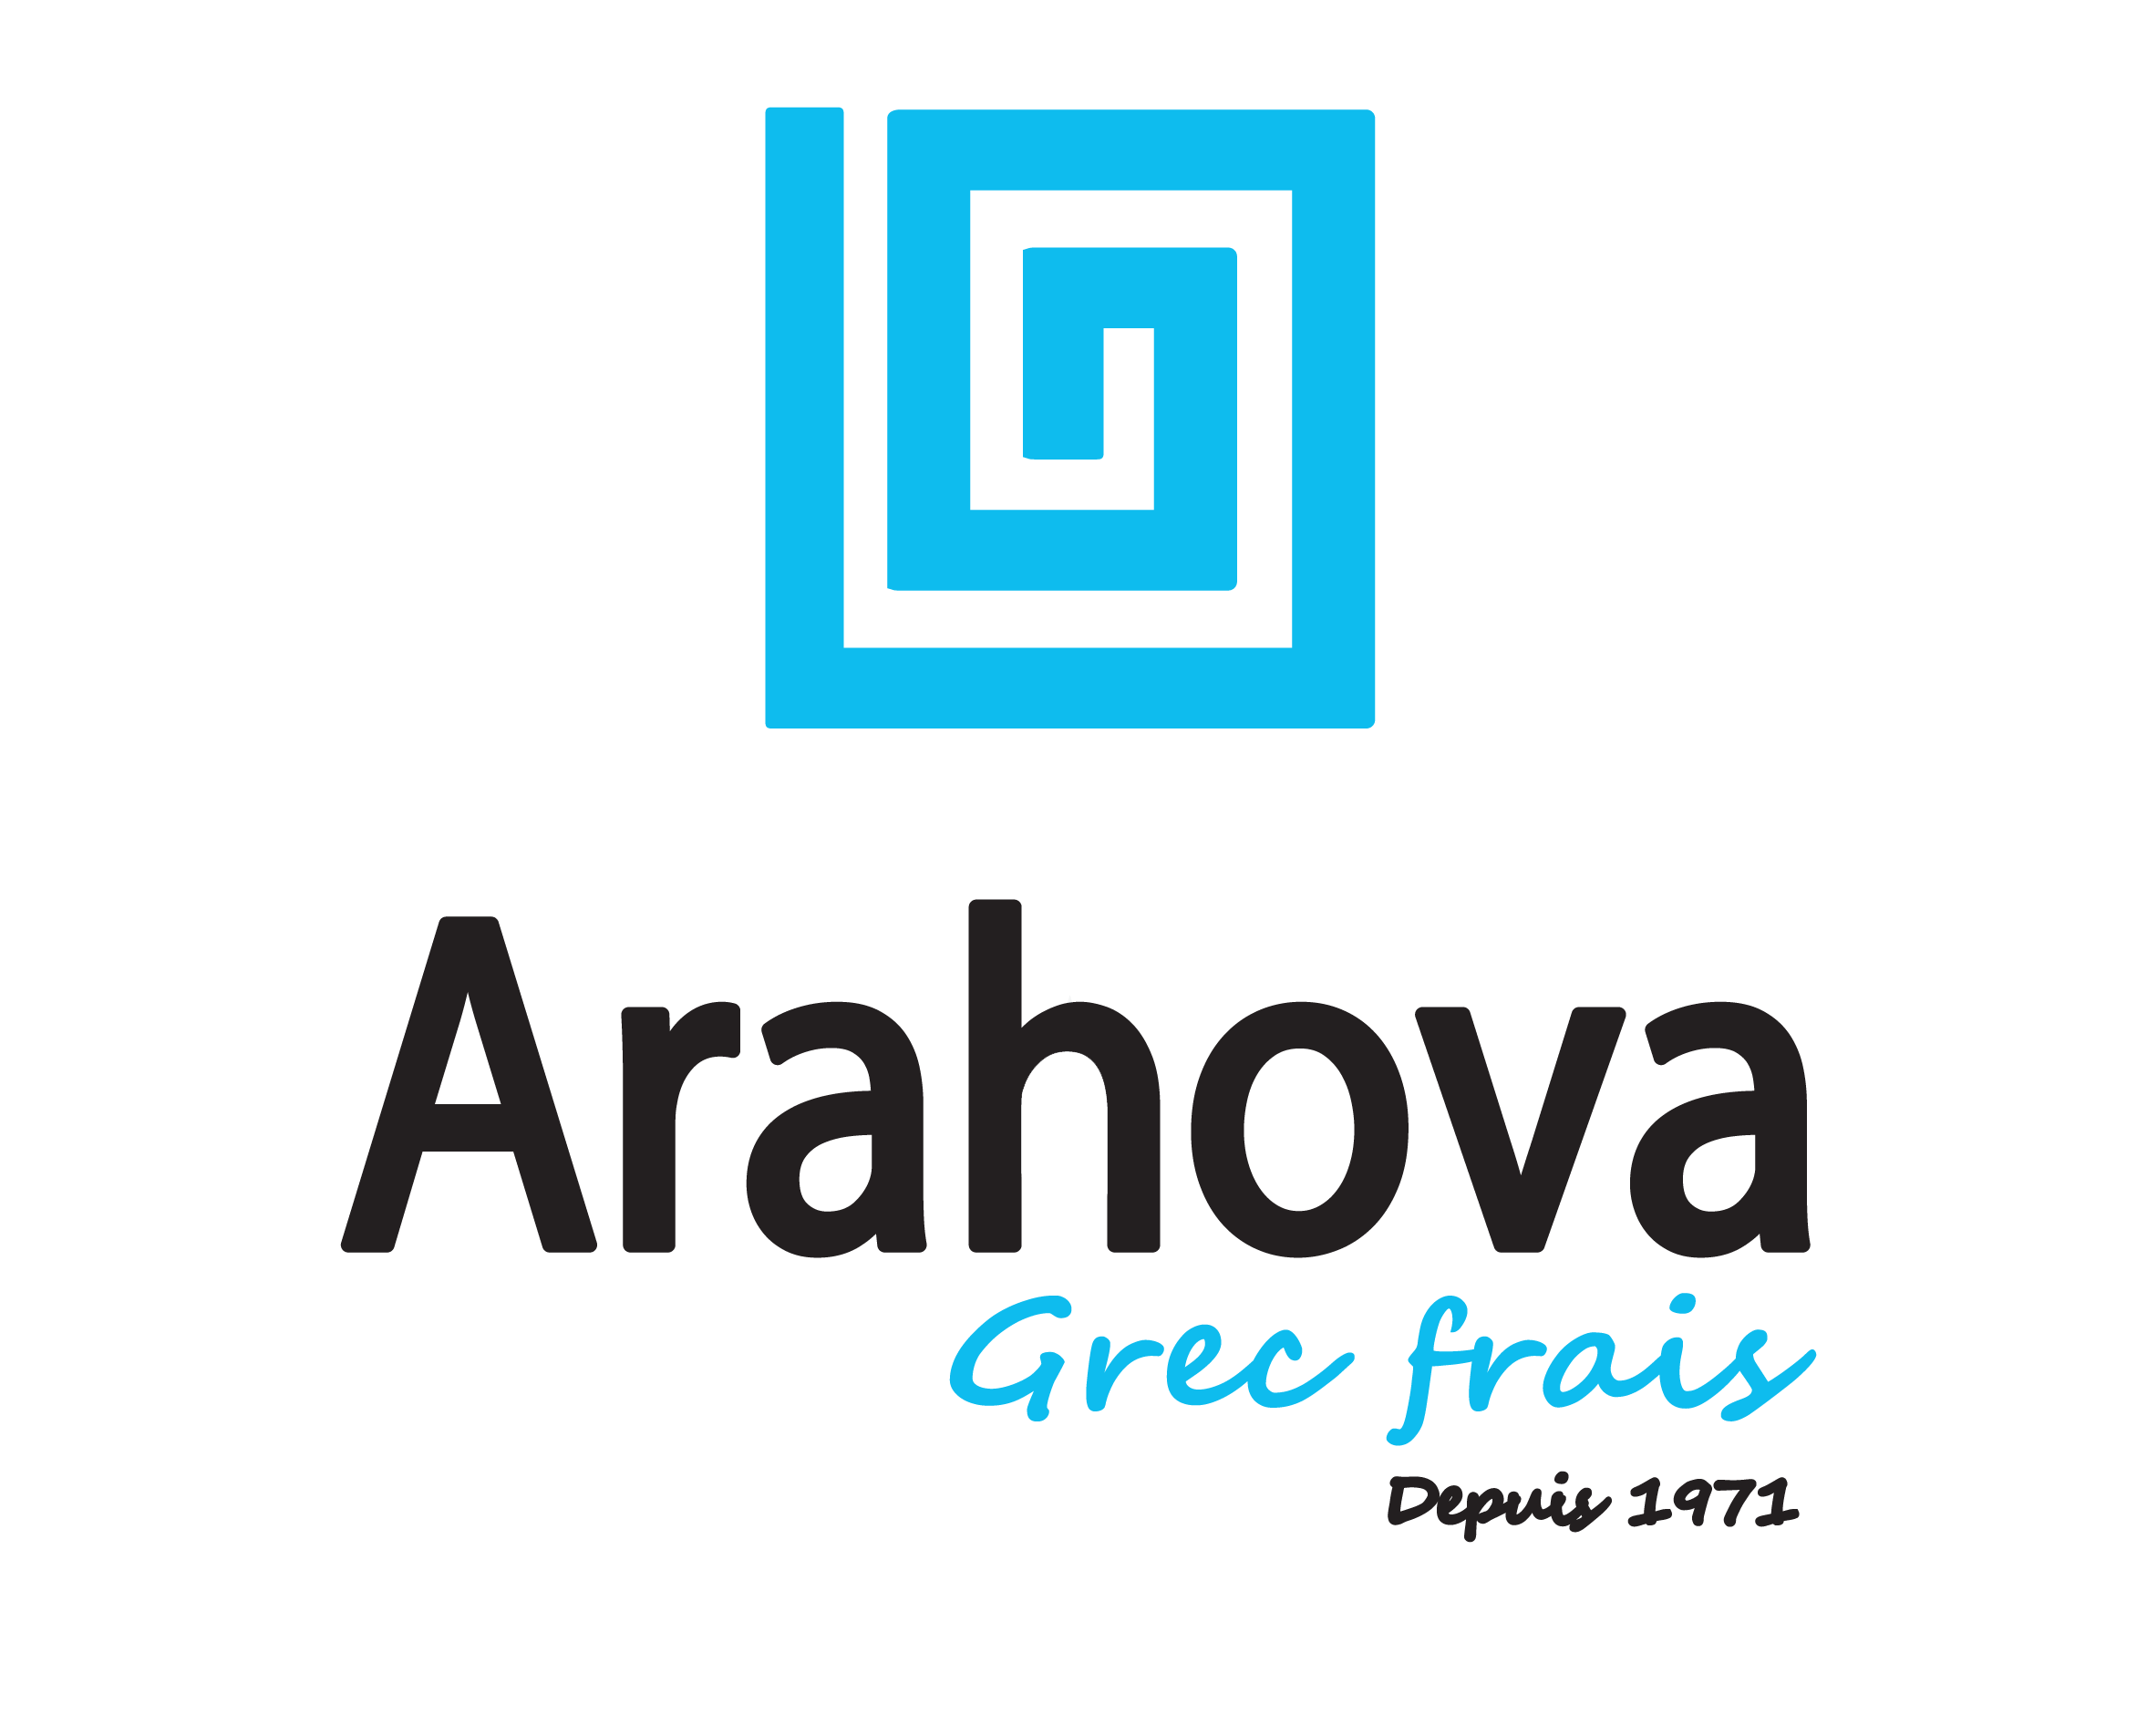 Arahova logo